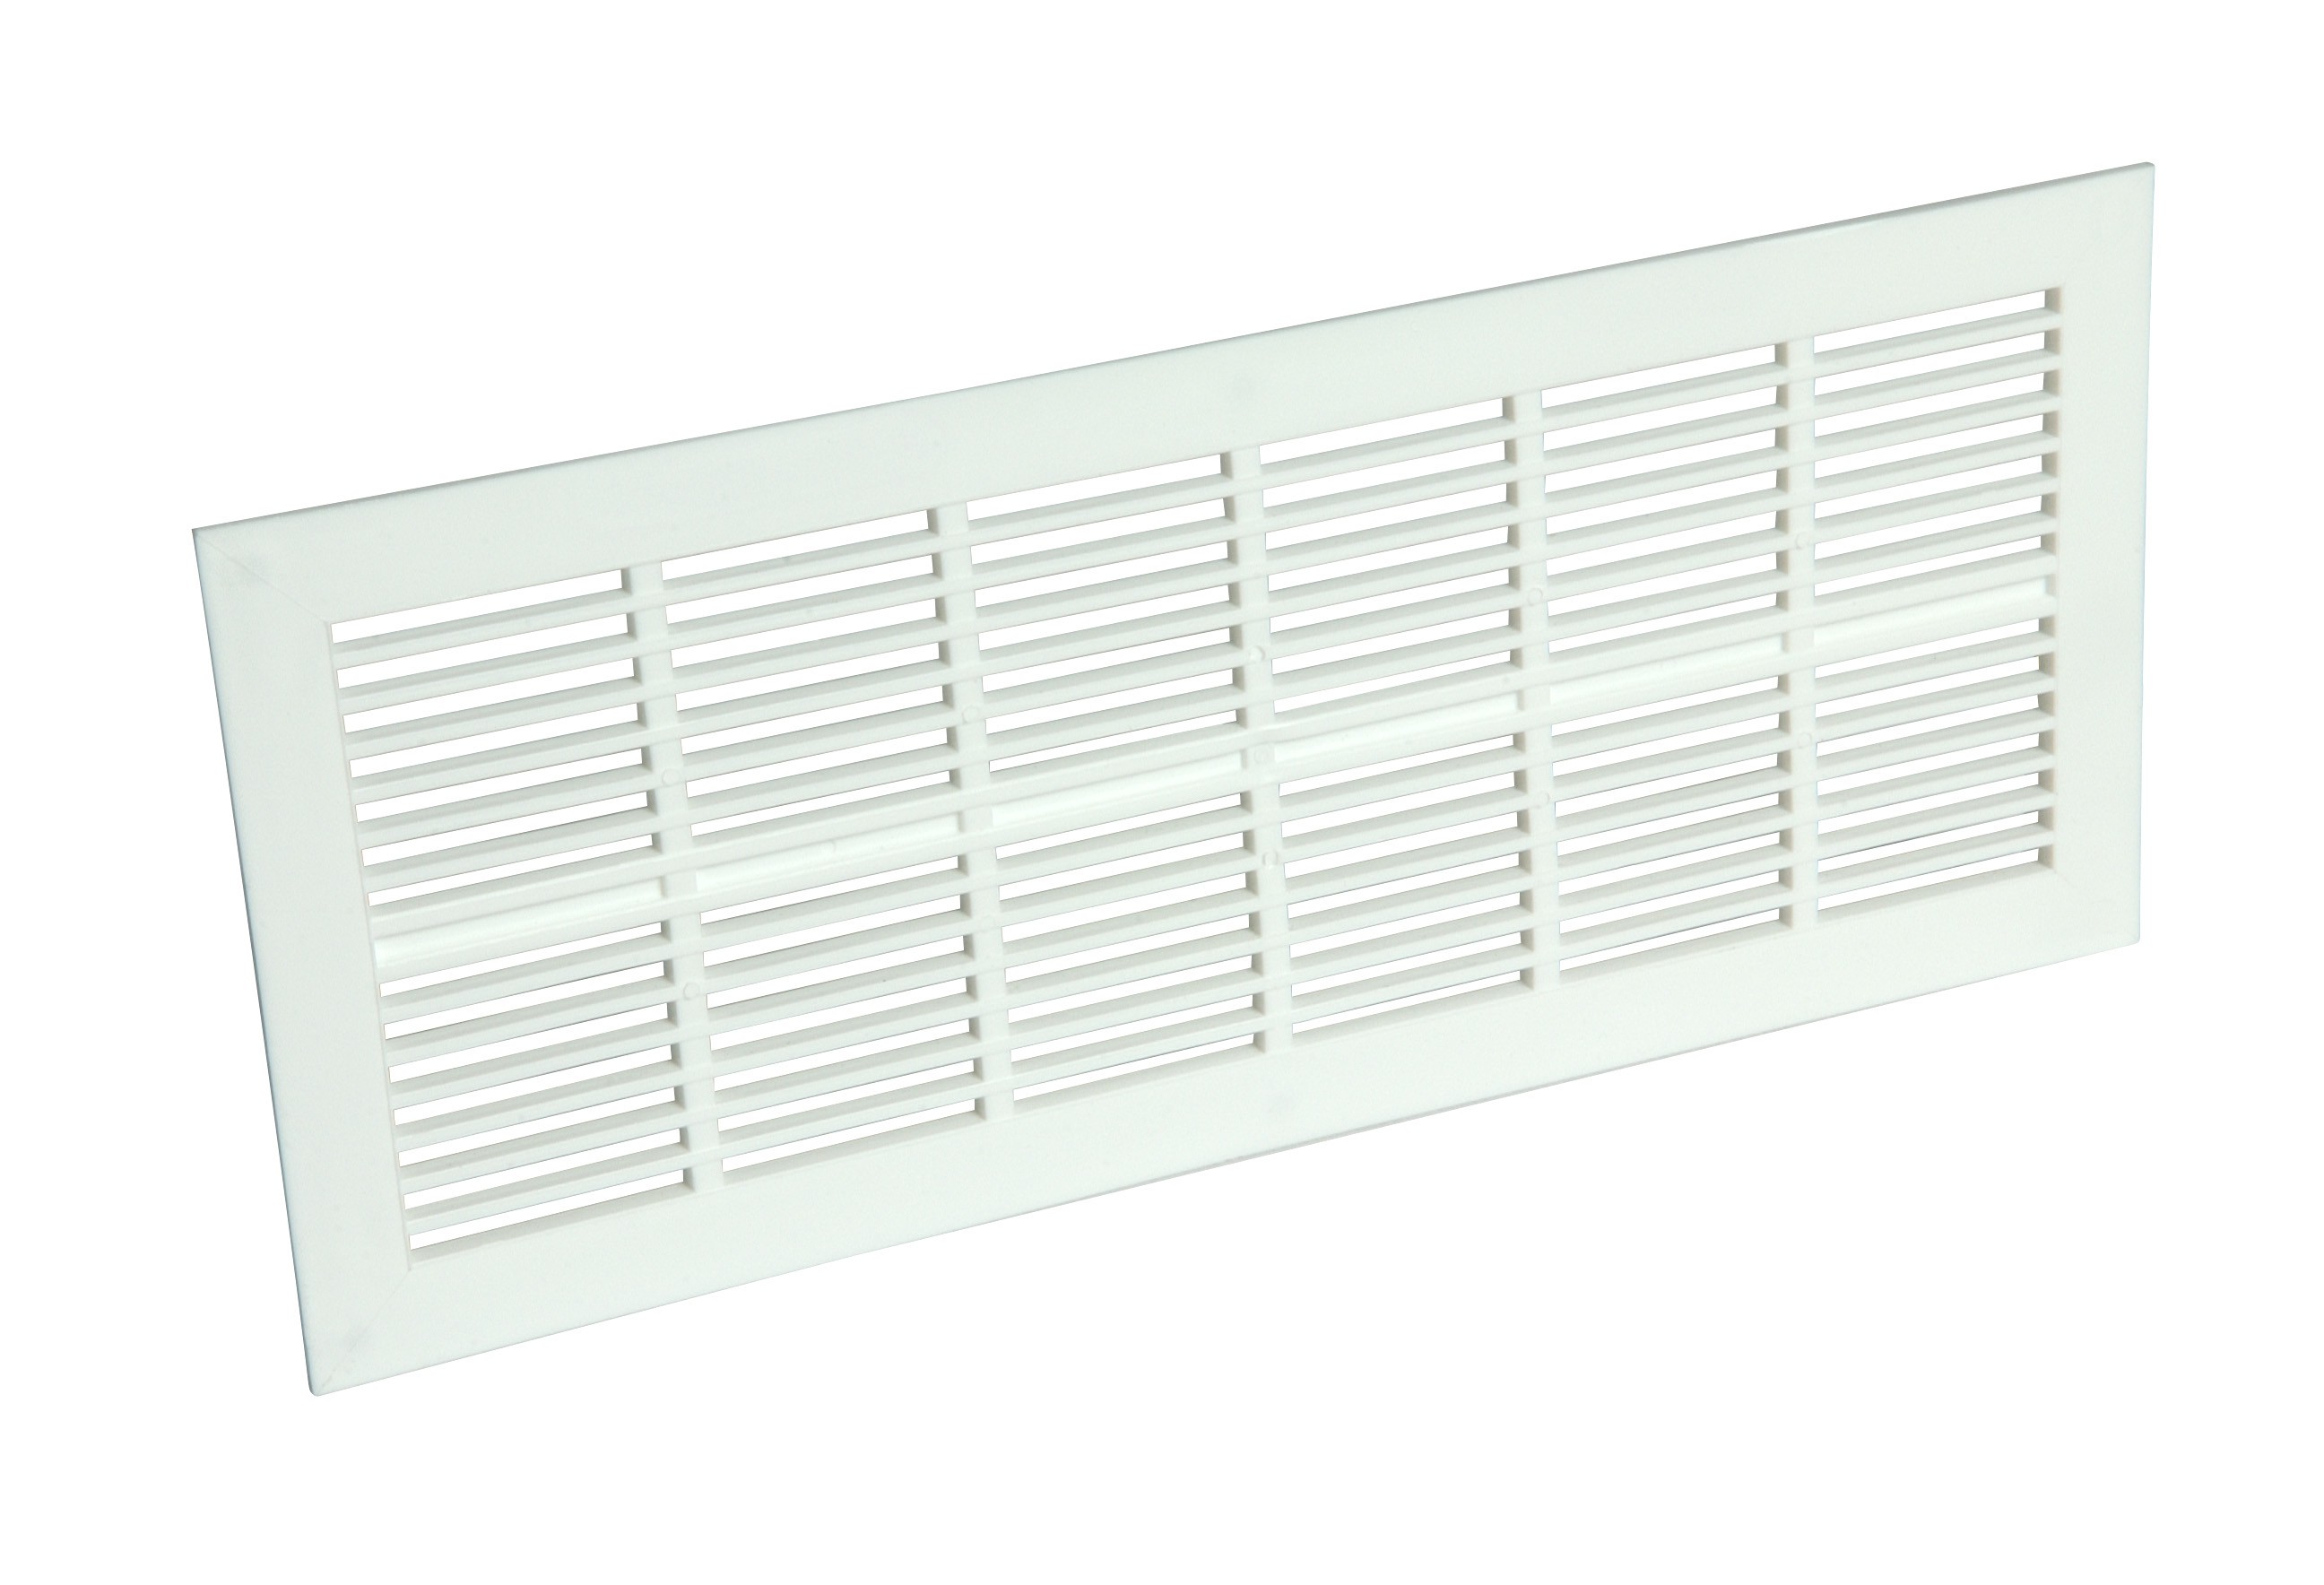 PVC classico: rettangolare extra piatto, 108x254, bianco